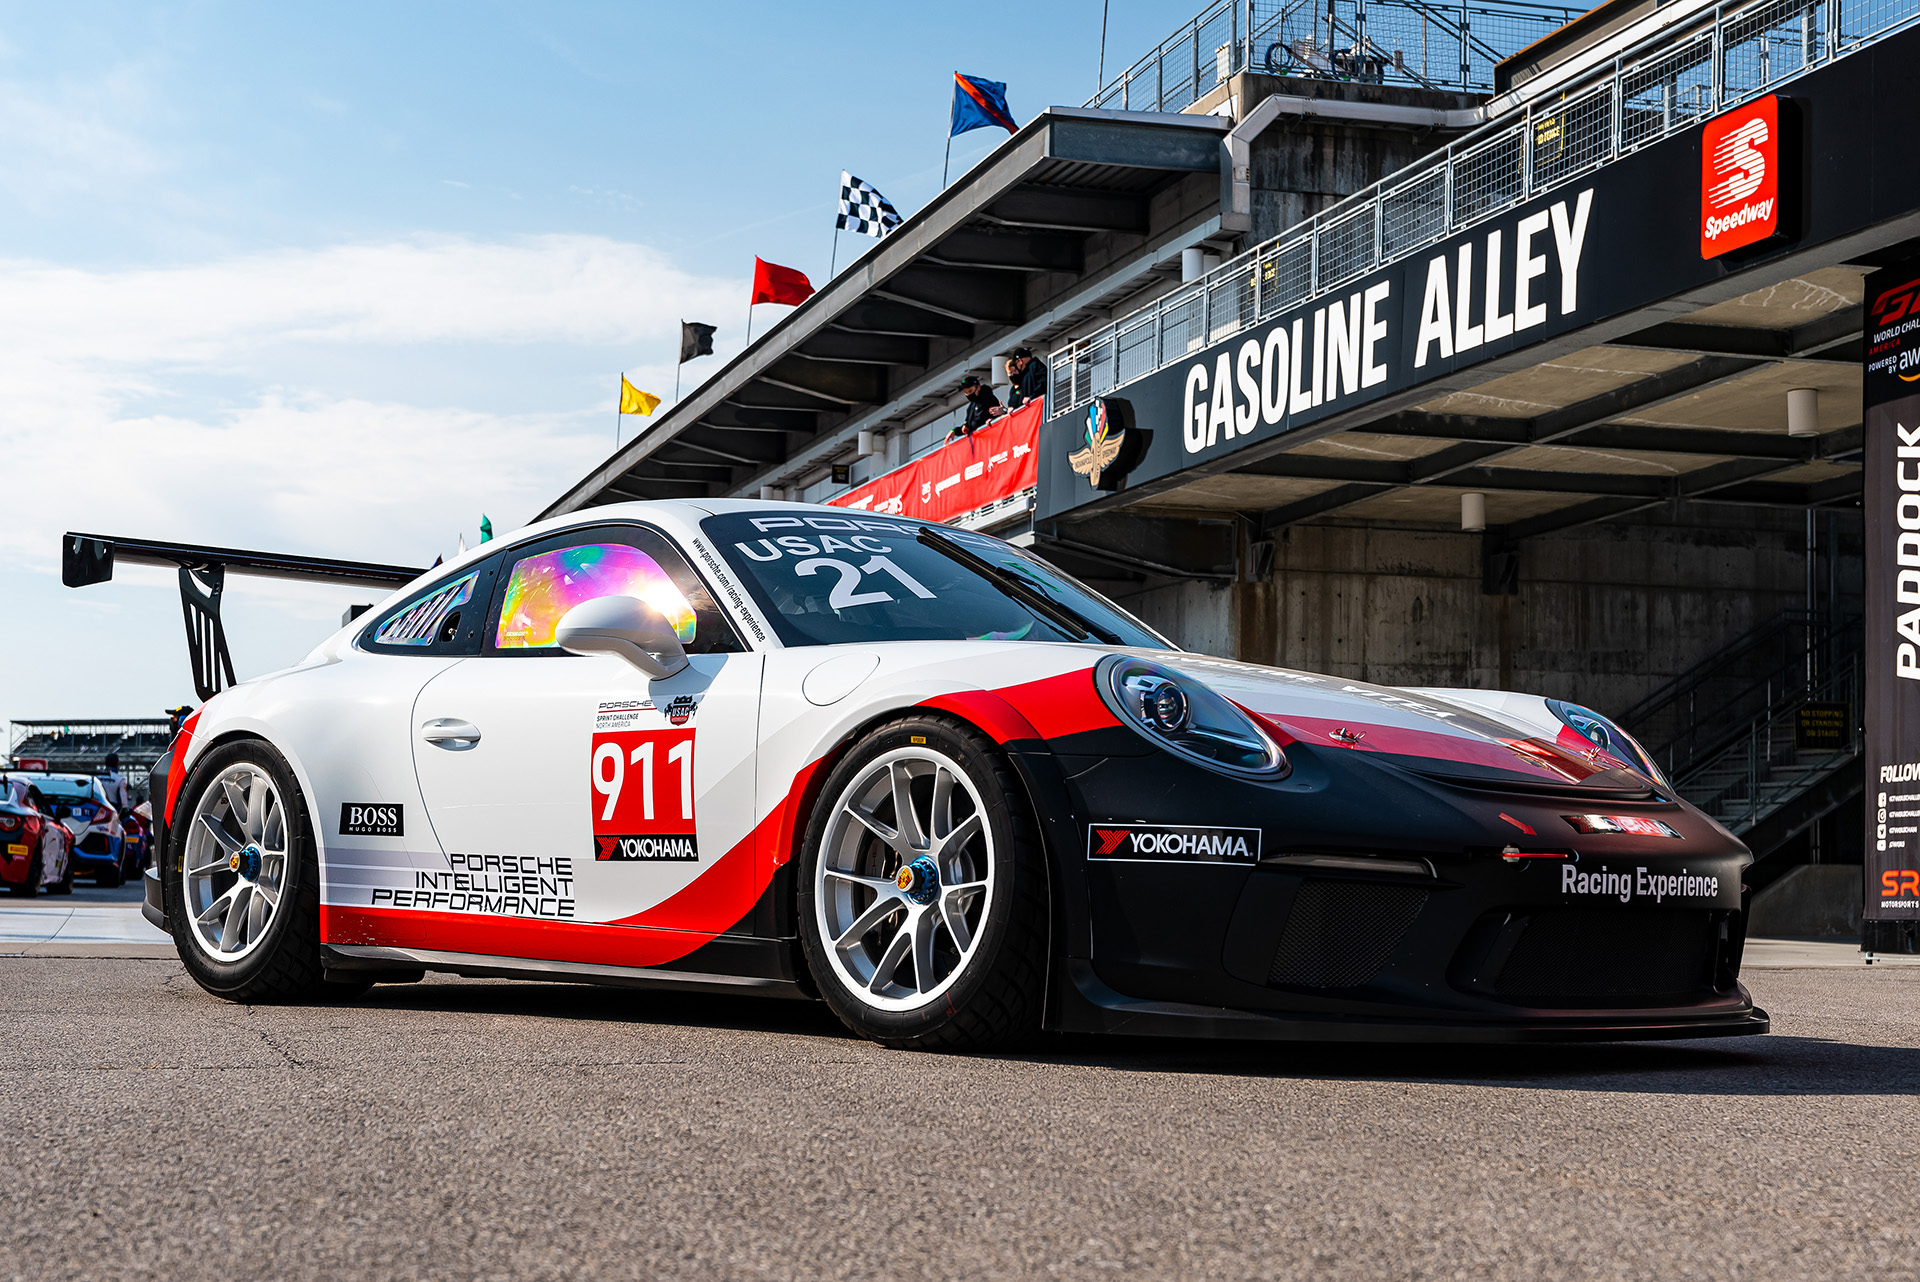 横浜ゴム、ポルシェレースの新シリーズ「Porsche Sprint Challenge North America by Yokohama」にADVANタイヤをワンメイク供給  - Car Watch